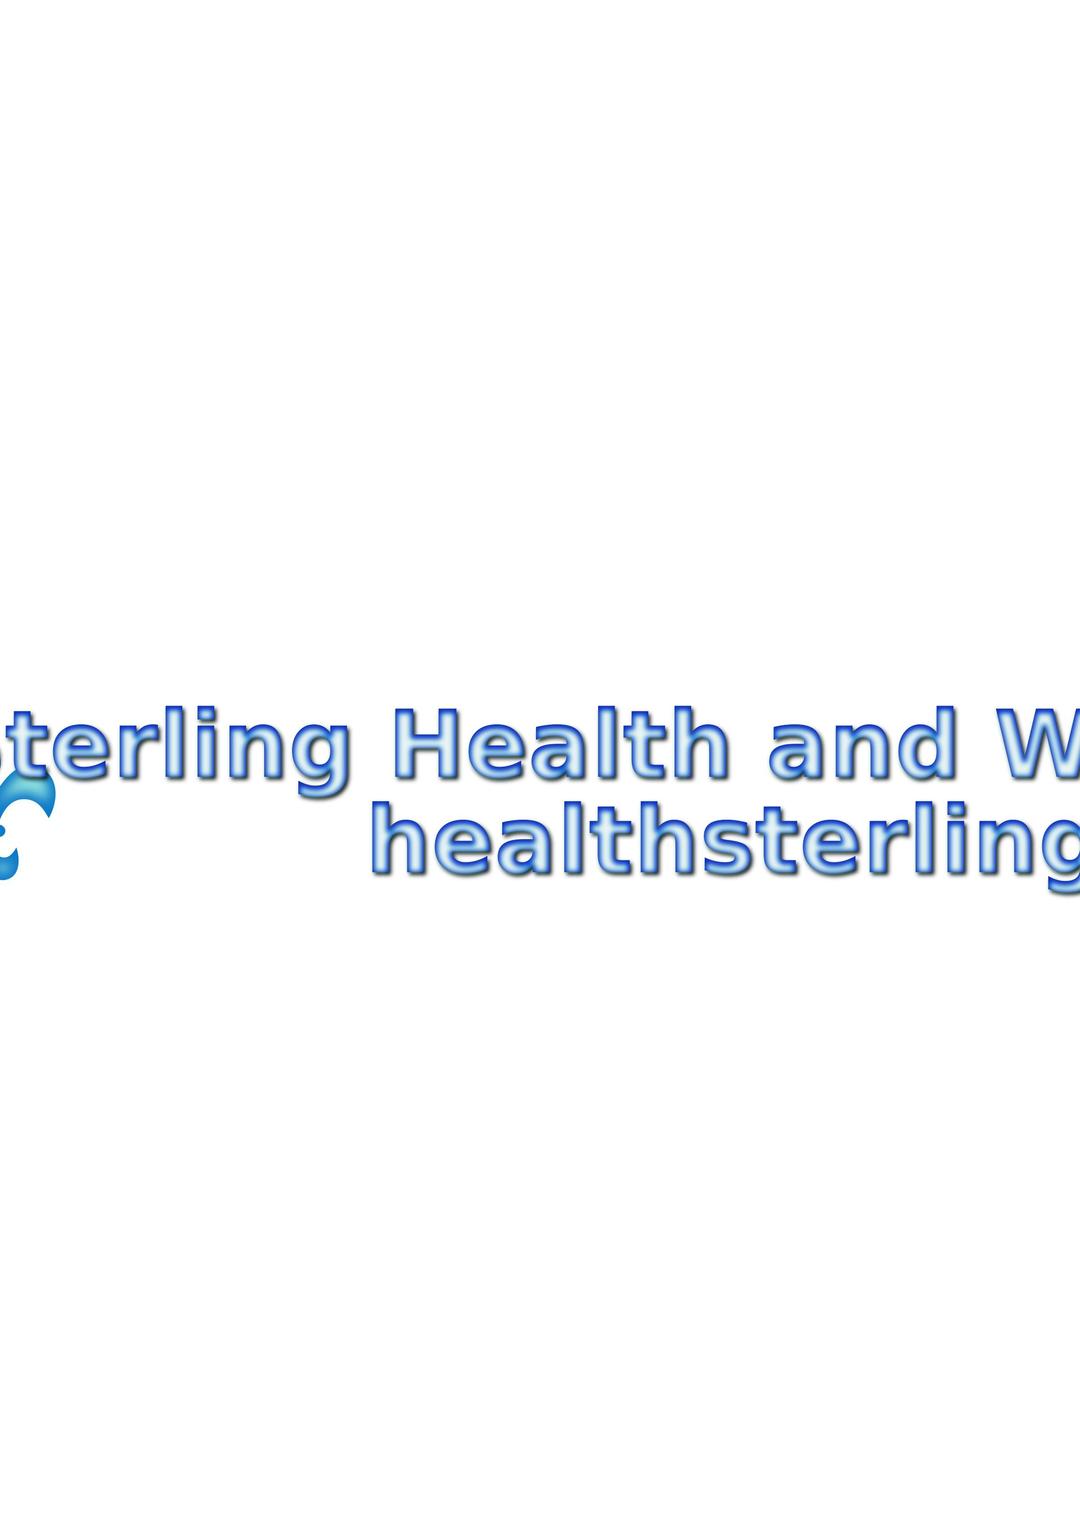 Sterling Health logo png transparent